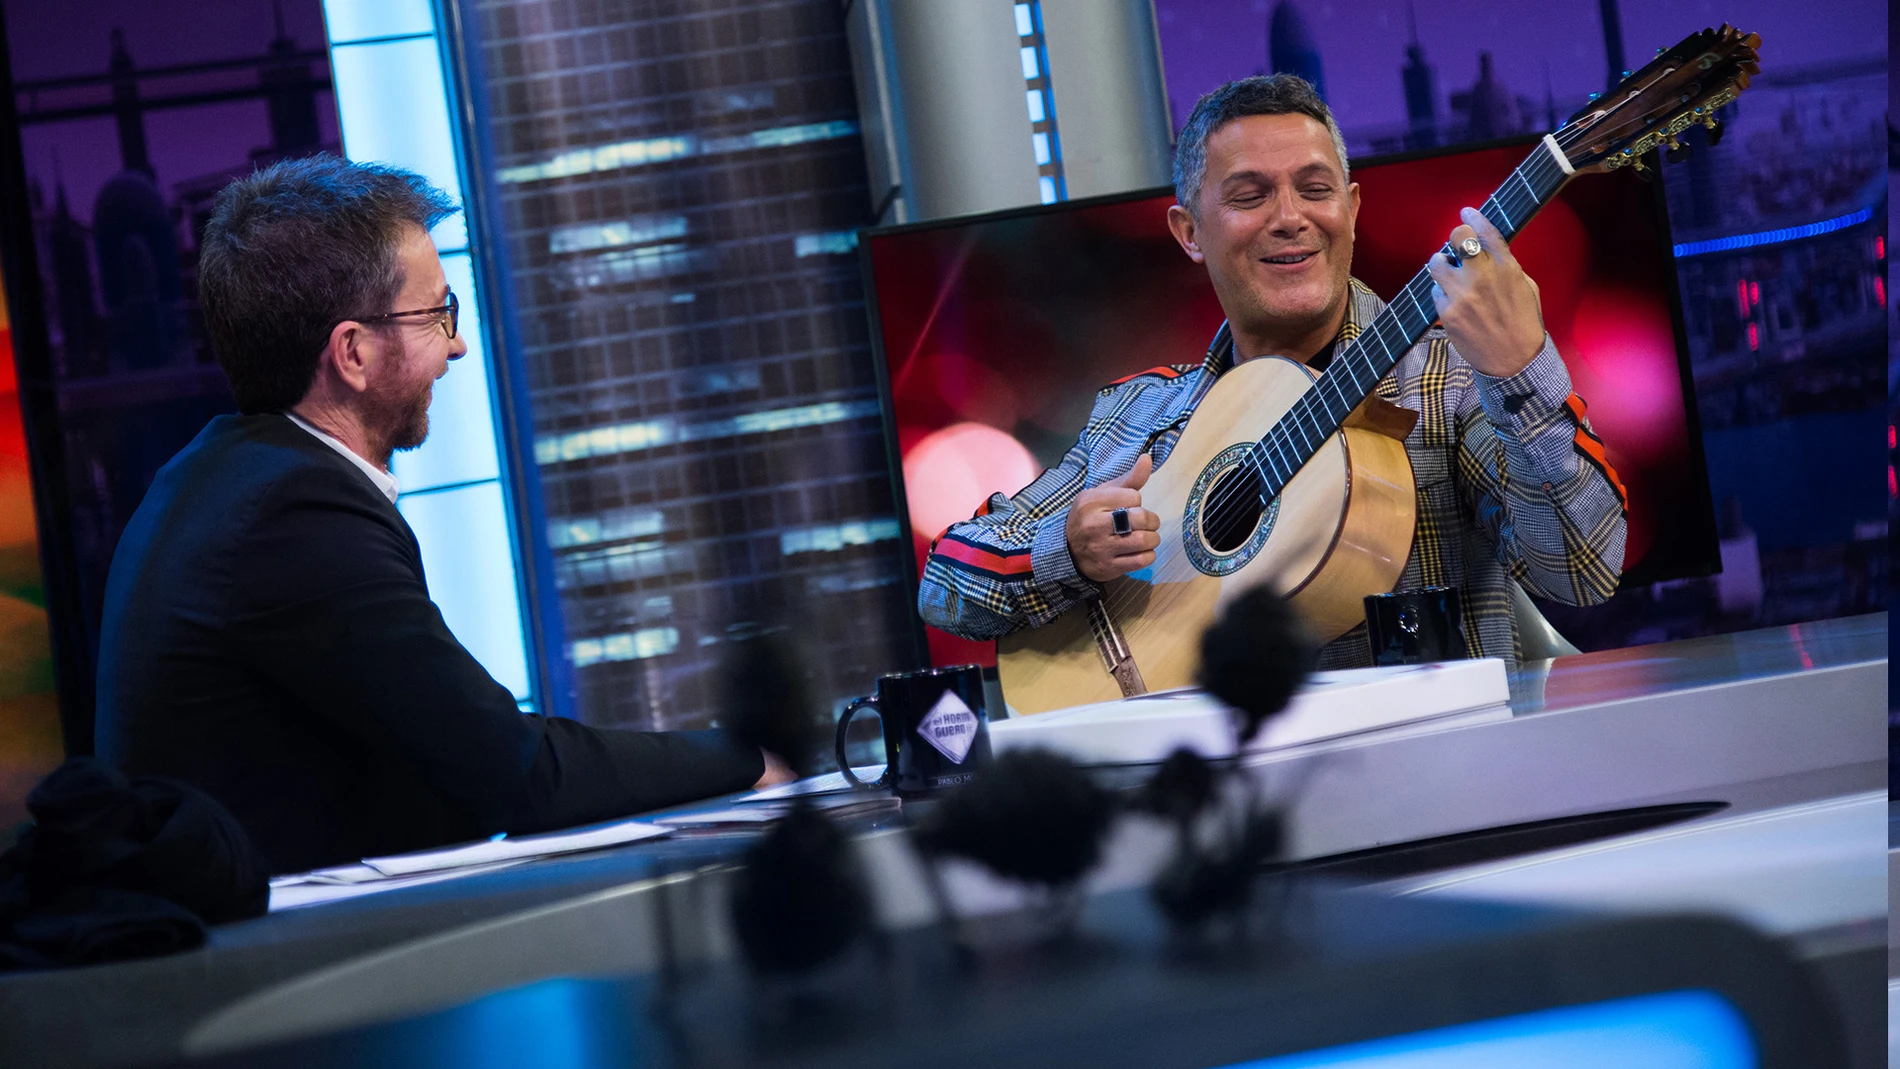 SUPER - Alejandro Sanz enamora tocando la guitarra y cantando 'Mi persona favorita' en 'El Hormiguero 3.0'